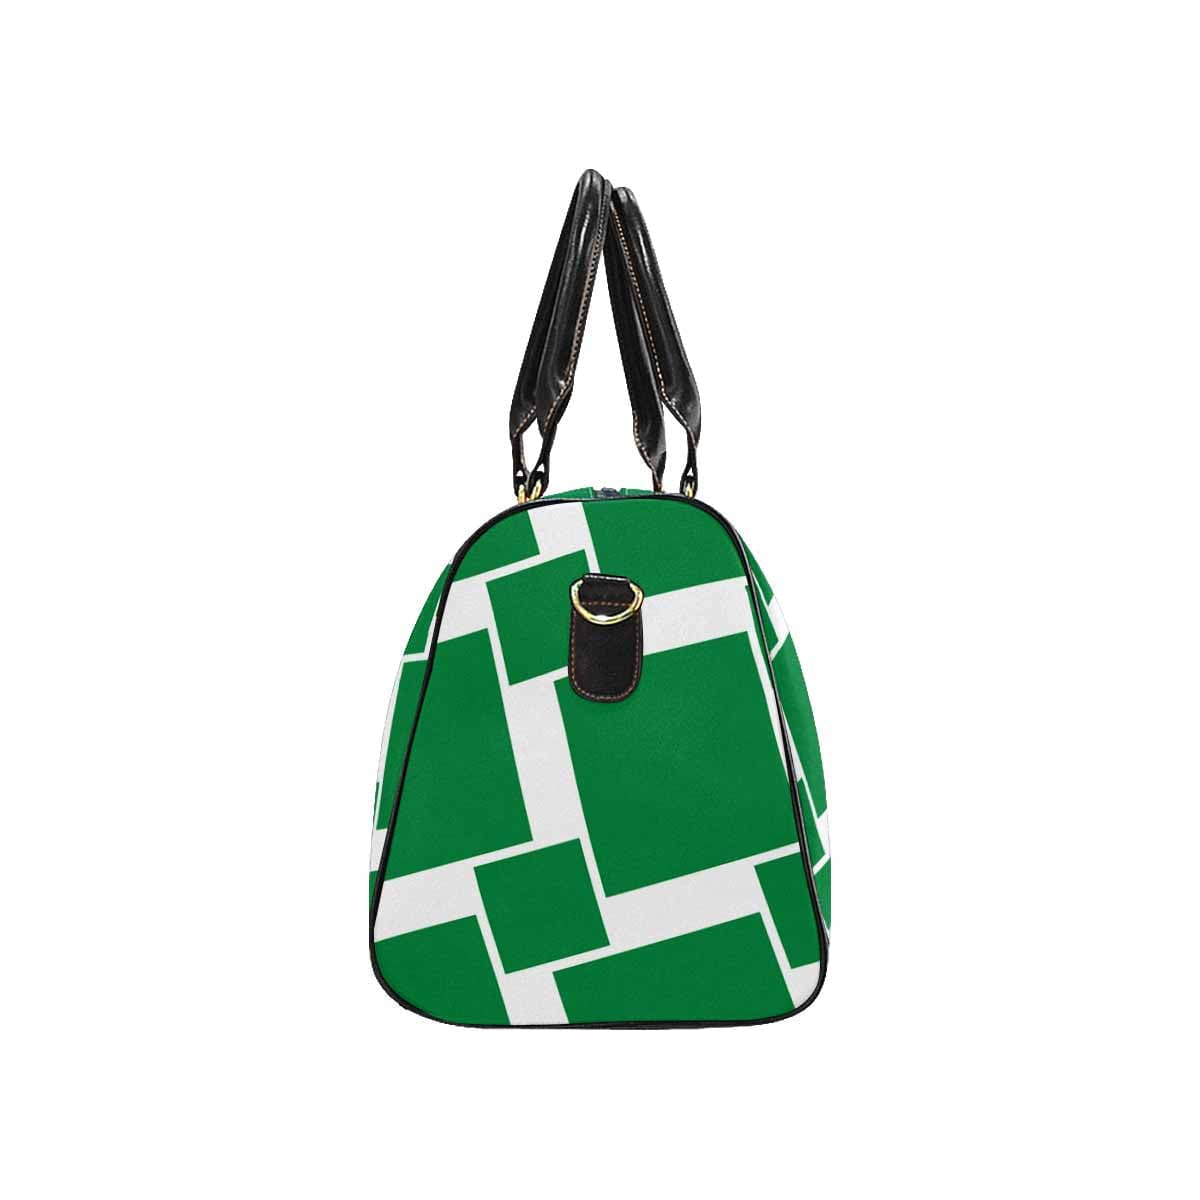 Travel Bag Adjustable Shoulder Strap Carry On Bag Forest Green - Bags | Travel